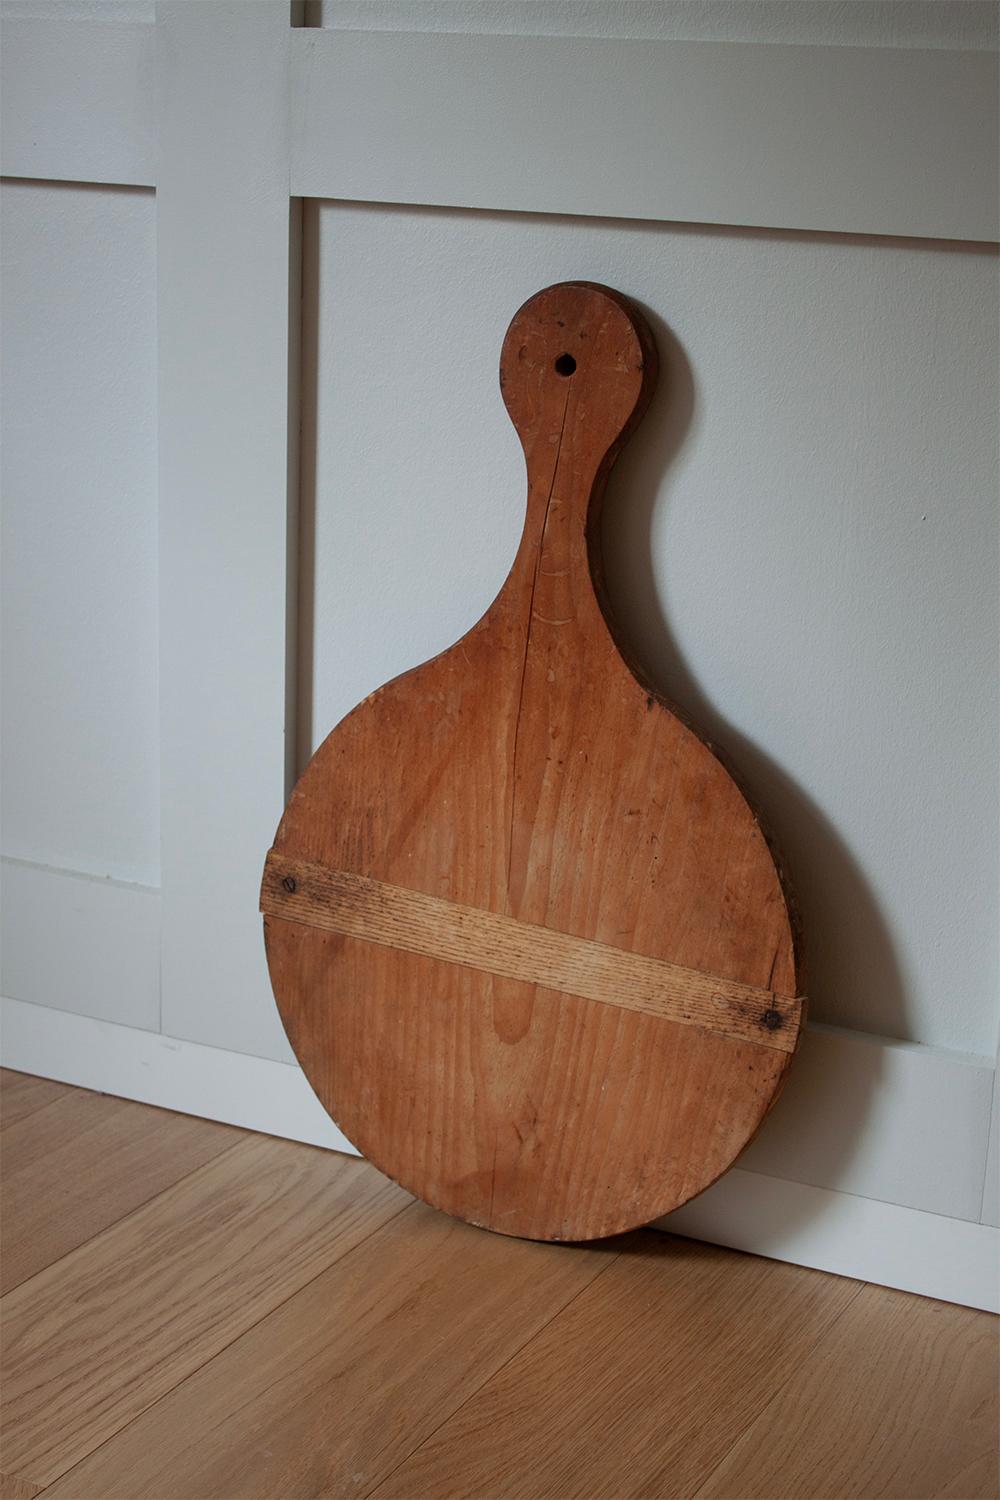 Planche à découper ou à servir primitive en bois, fabriquée à la main. Fabriqué en France. Cette planche est l'ajout parfait à toute cuisine pour ajouter de la texture et de l'histoire. 

Grande planche à découper en bois. Ce type de planche à